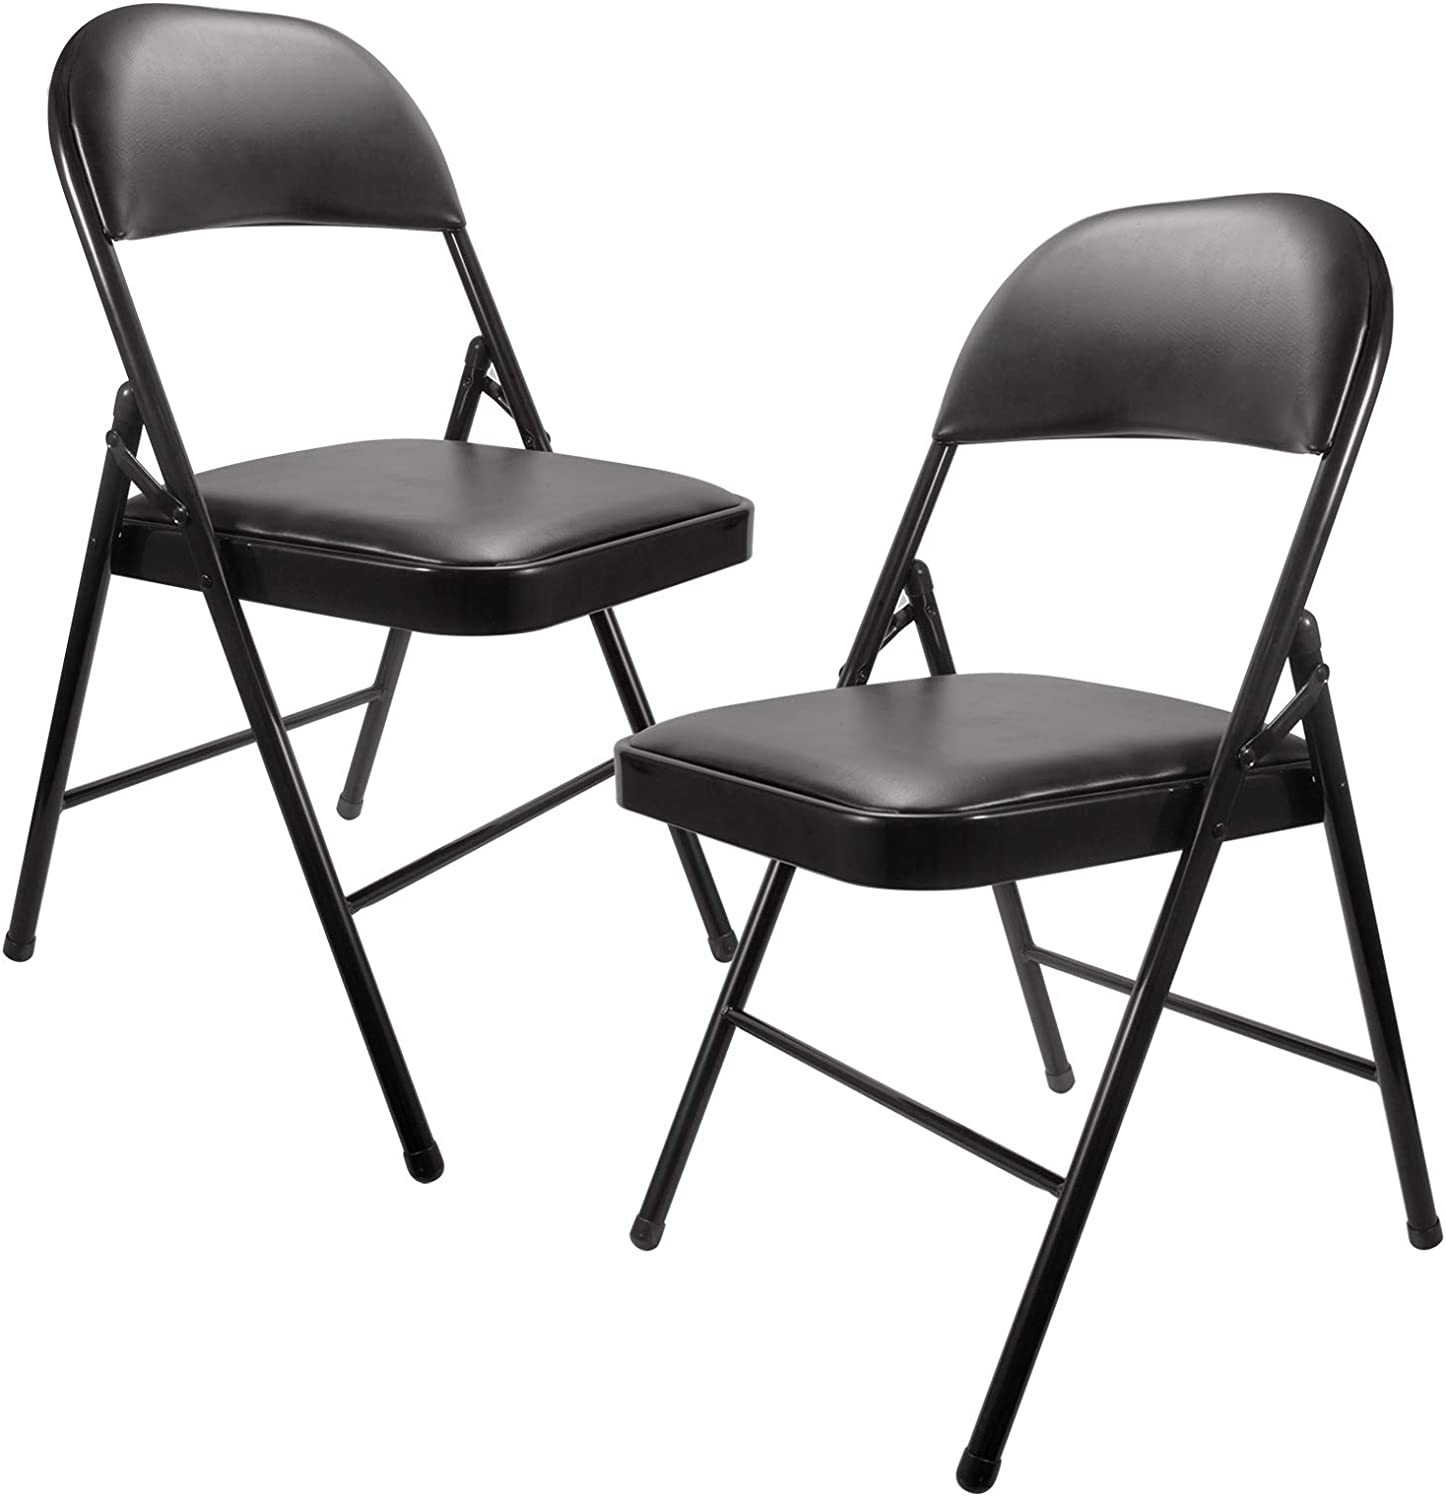 Wysokiej jakości składane krzesło meblowe z metalową ramą. Czarne składane krzesła z wyściełanymi siedzeniami